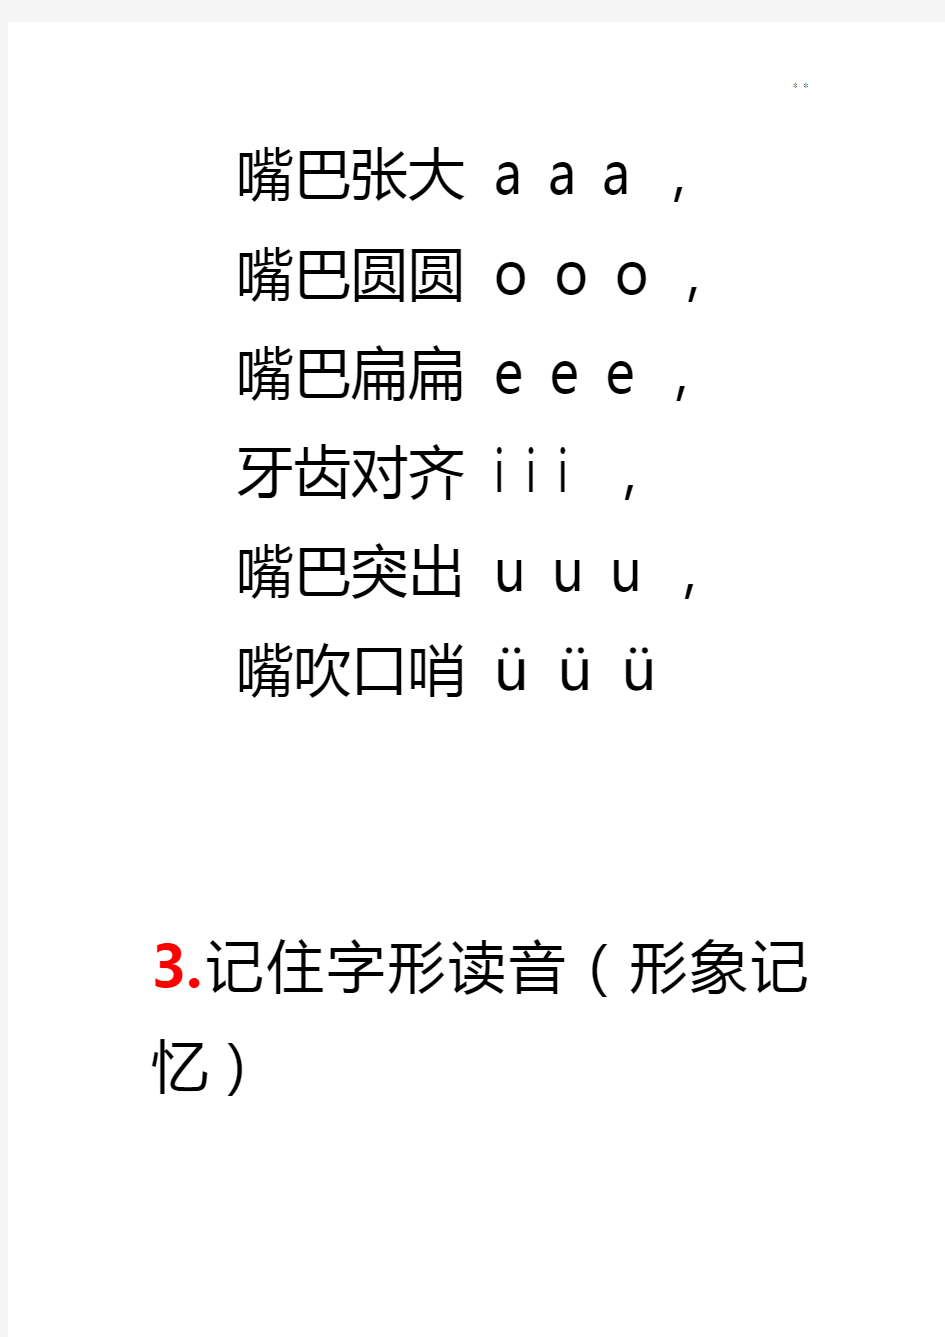 巧记汉语拼音口诀全套整合